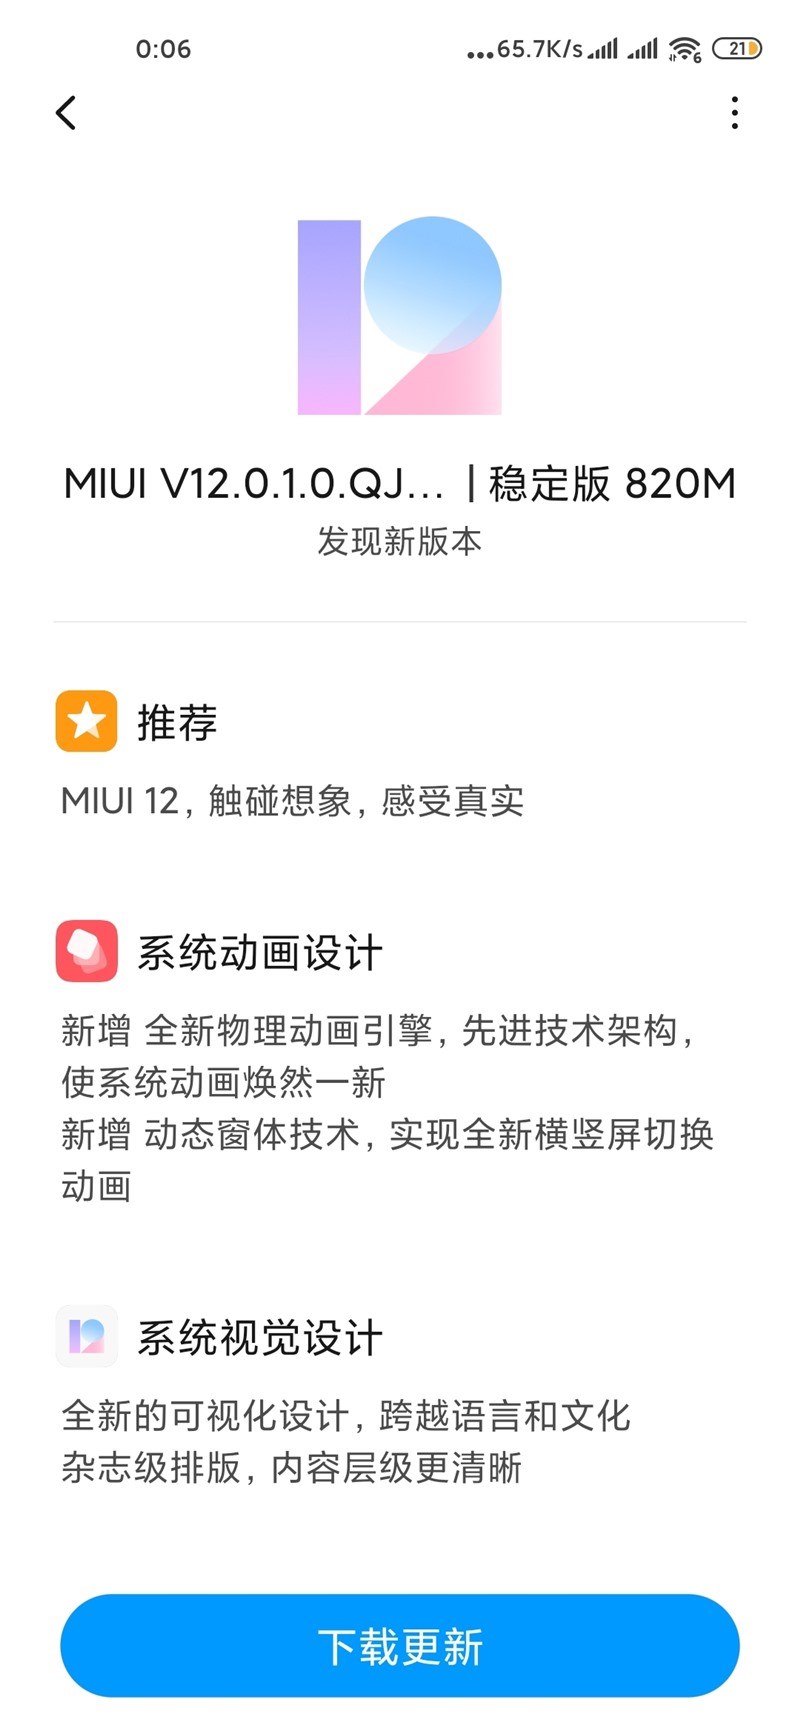 Xiaomi MI 10 MIUI 12 Stable update